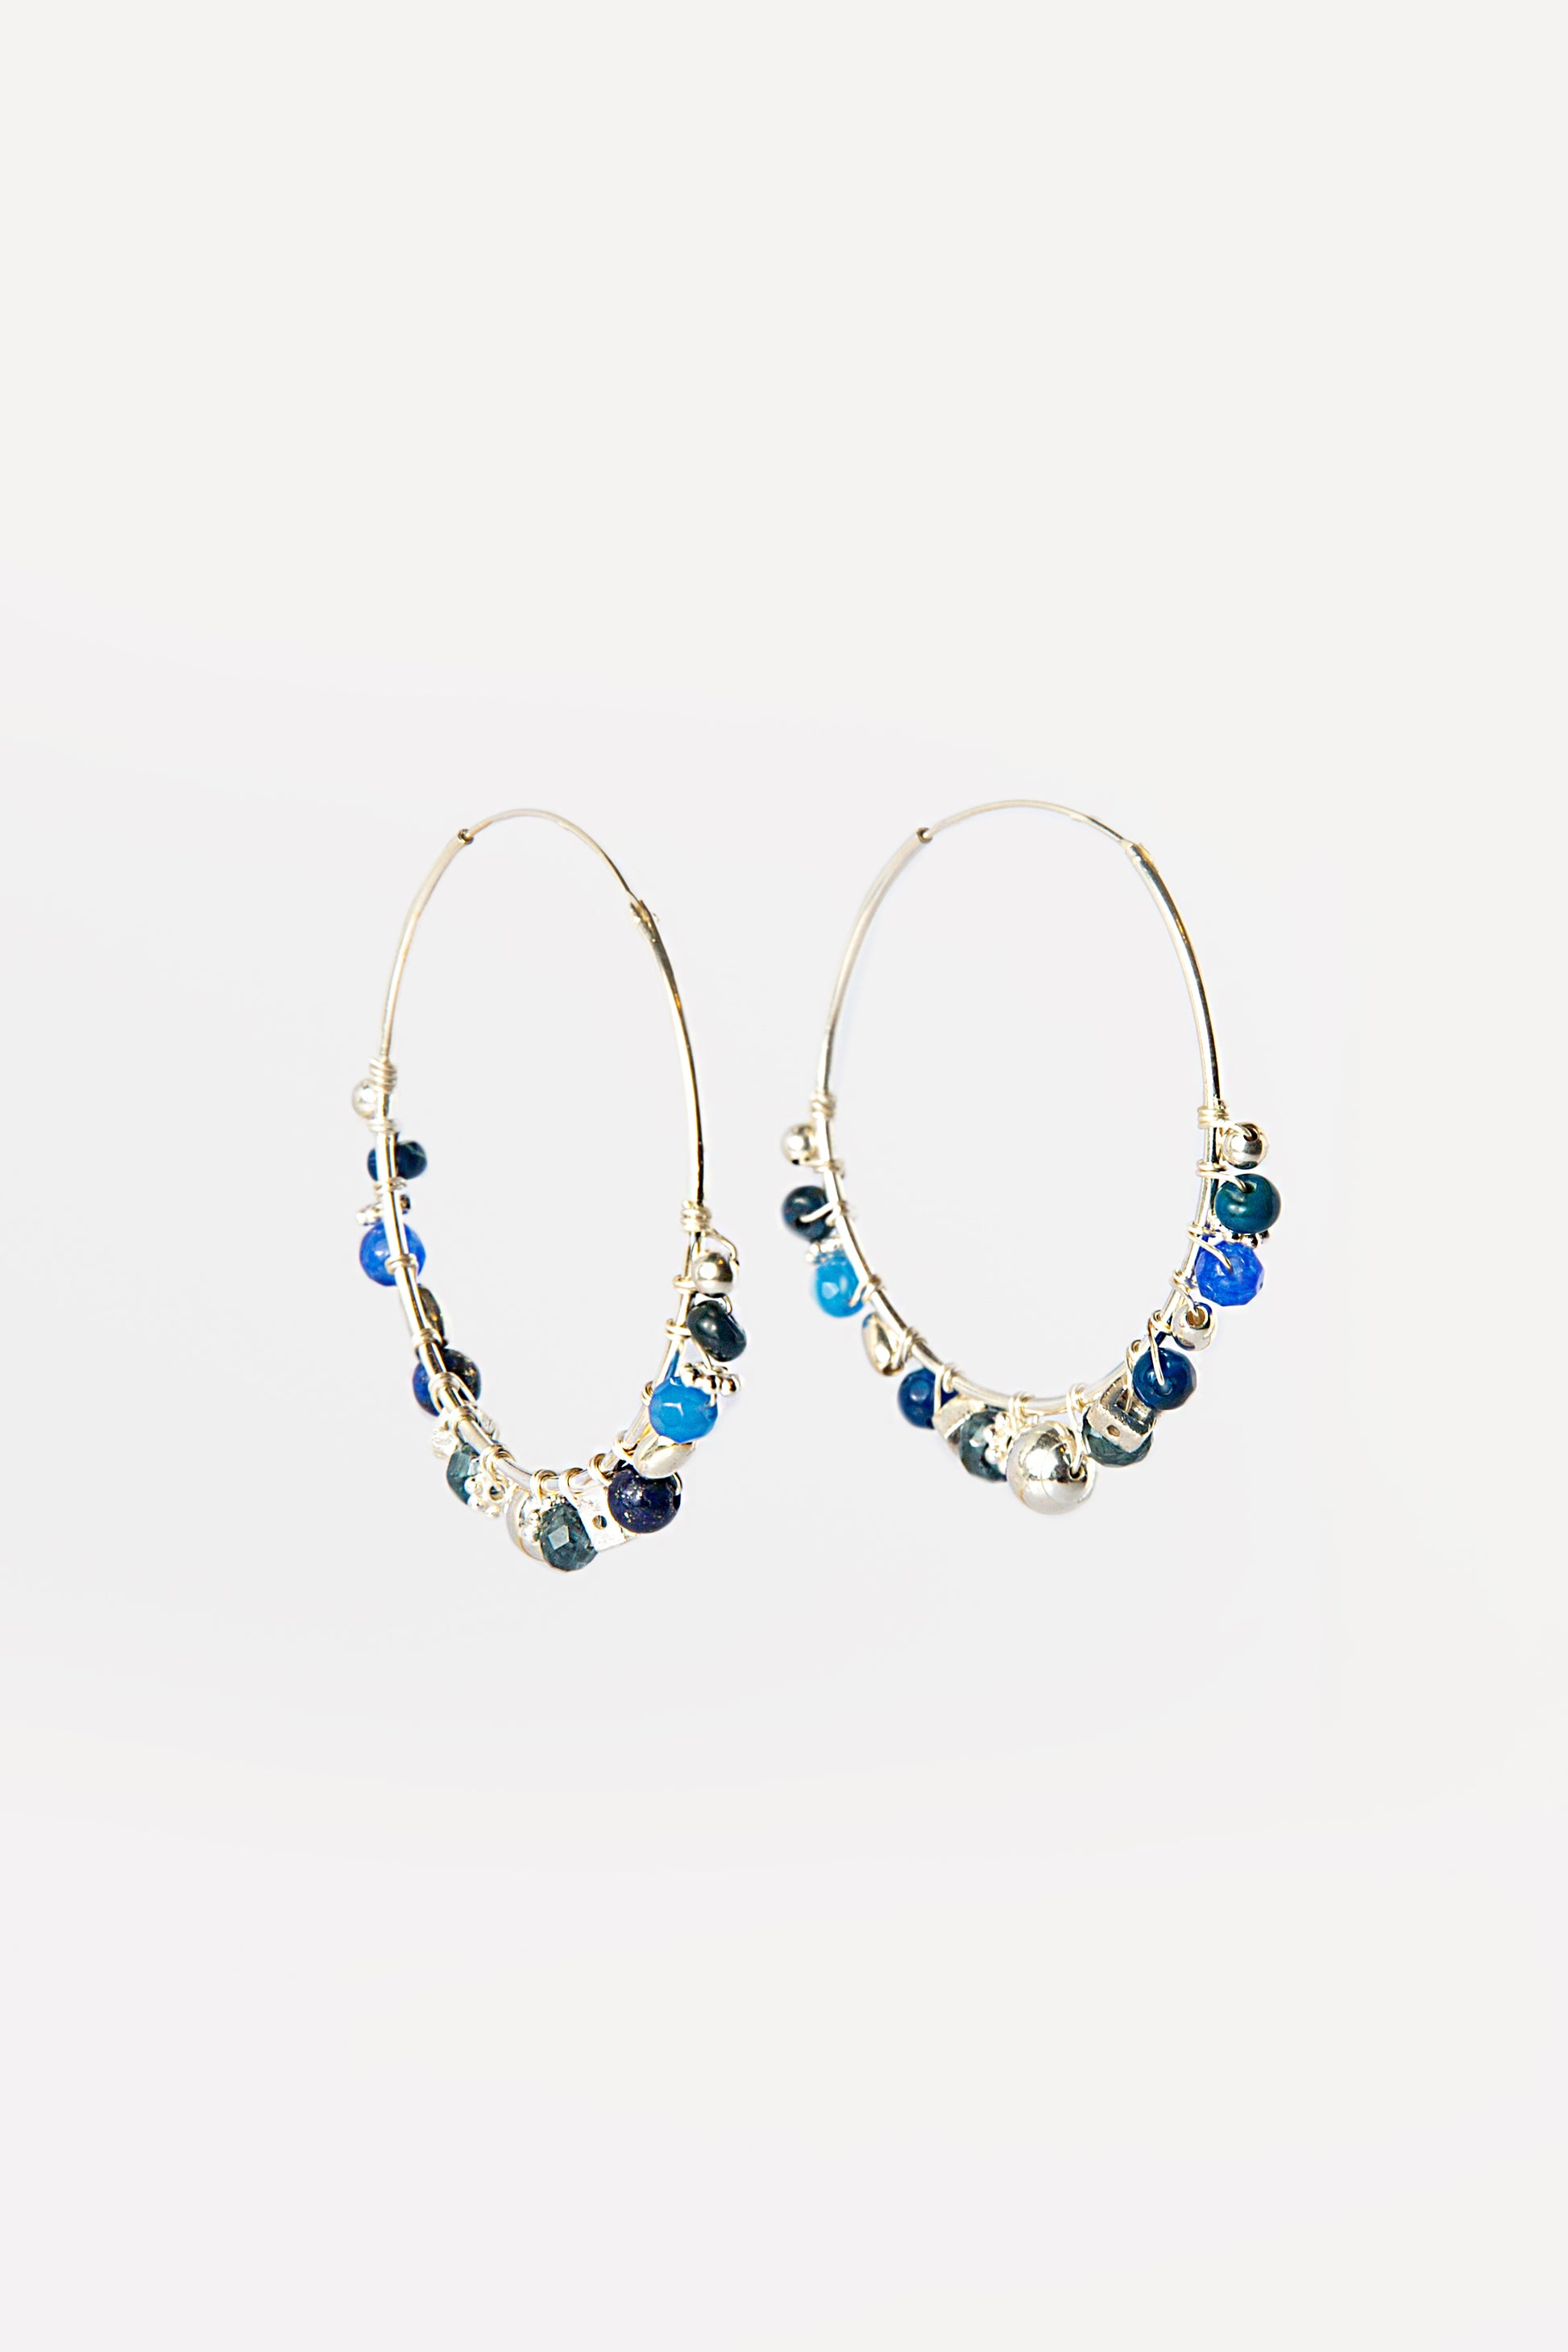 #anelle #argento #silver #lapislazzuli #turchesi #orecchino #regalodonna #gioiello #jewelery